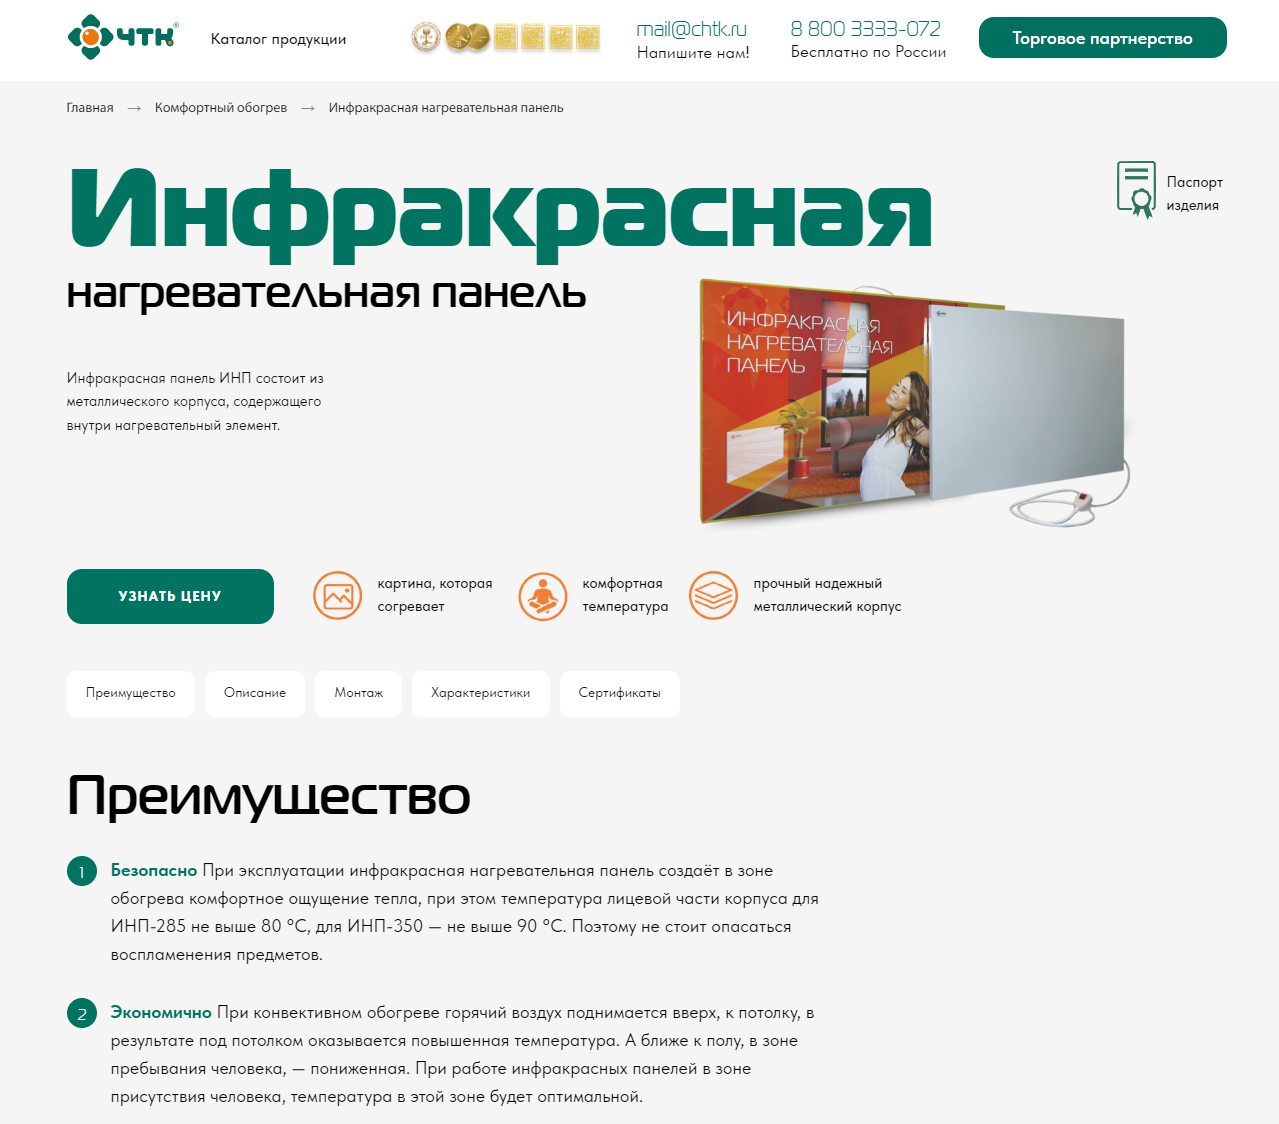 OLX.ua - объявления в Украине - нагревательная панель